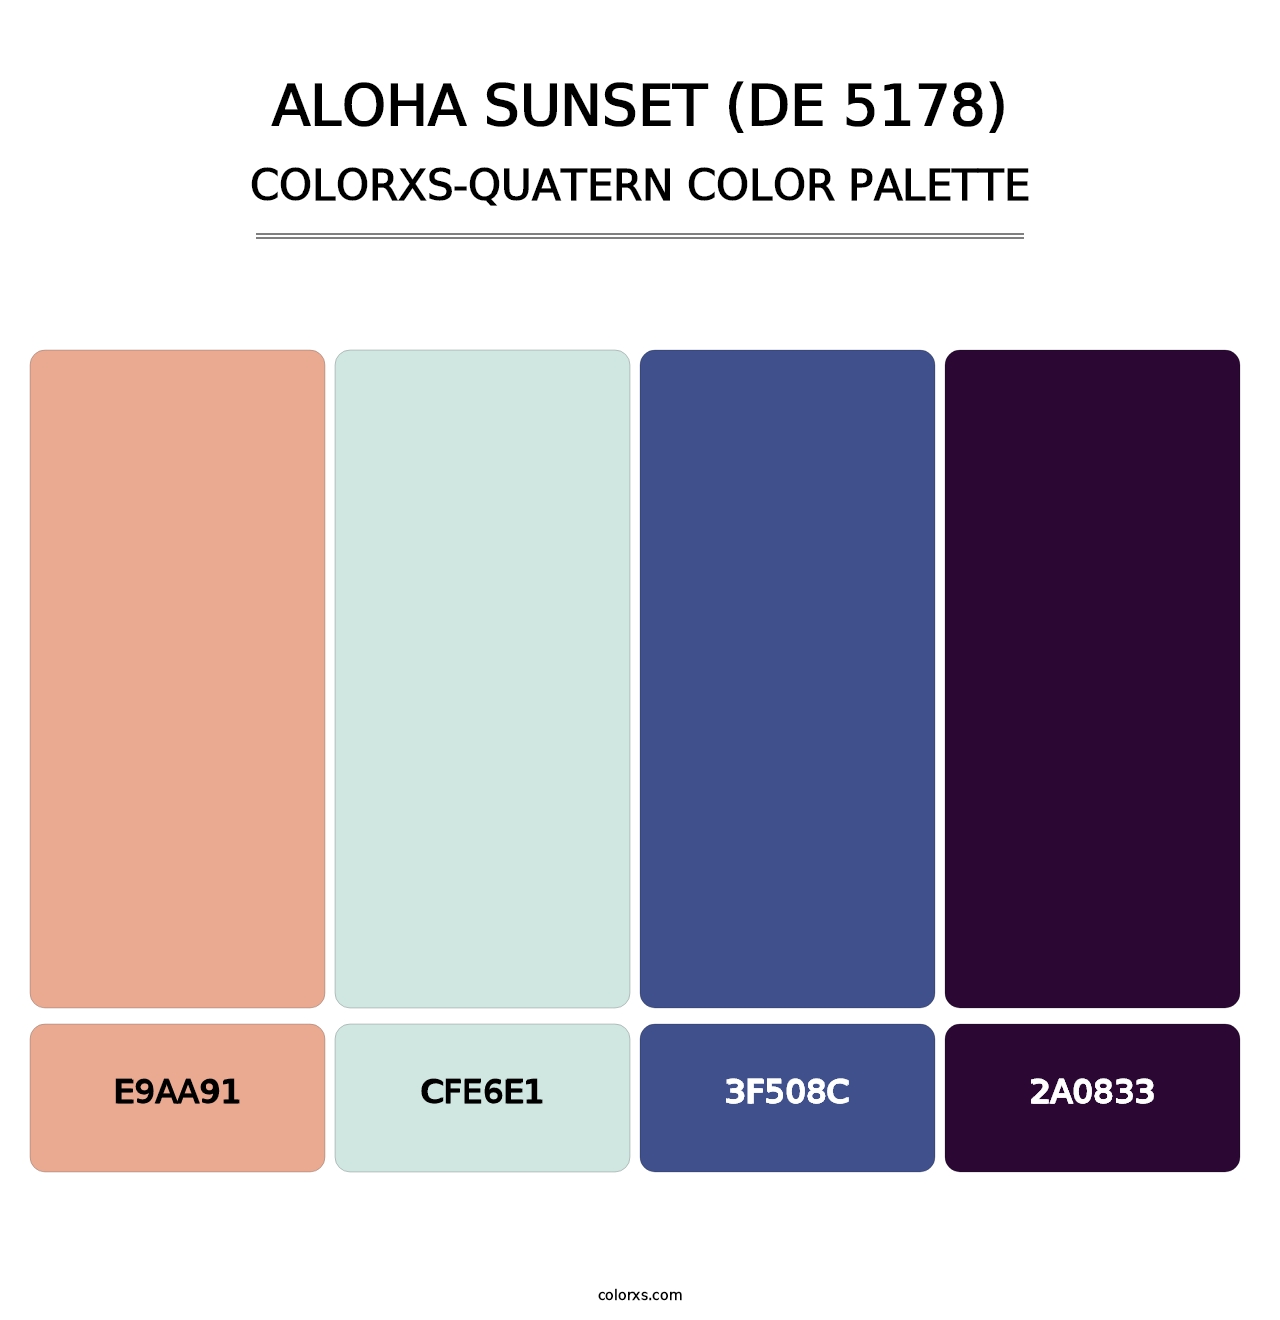 Aloha Sunset (DE 5178) - Colorxs Quatern Palette